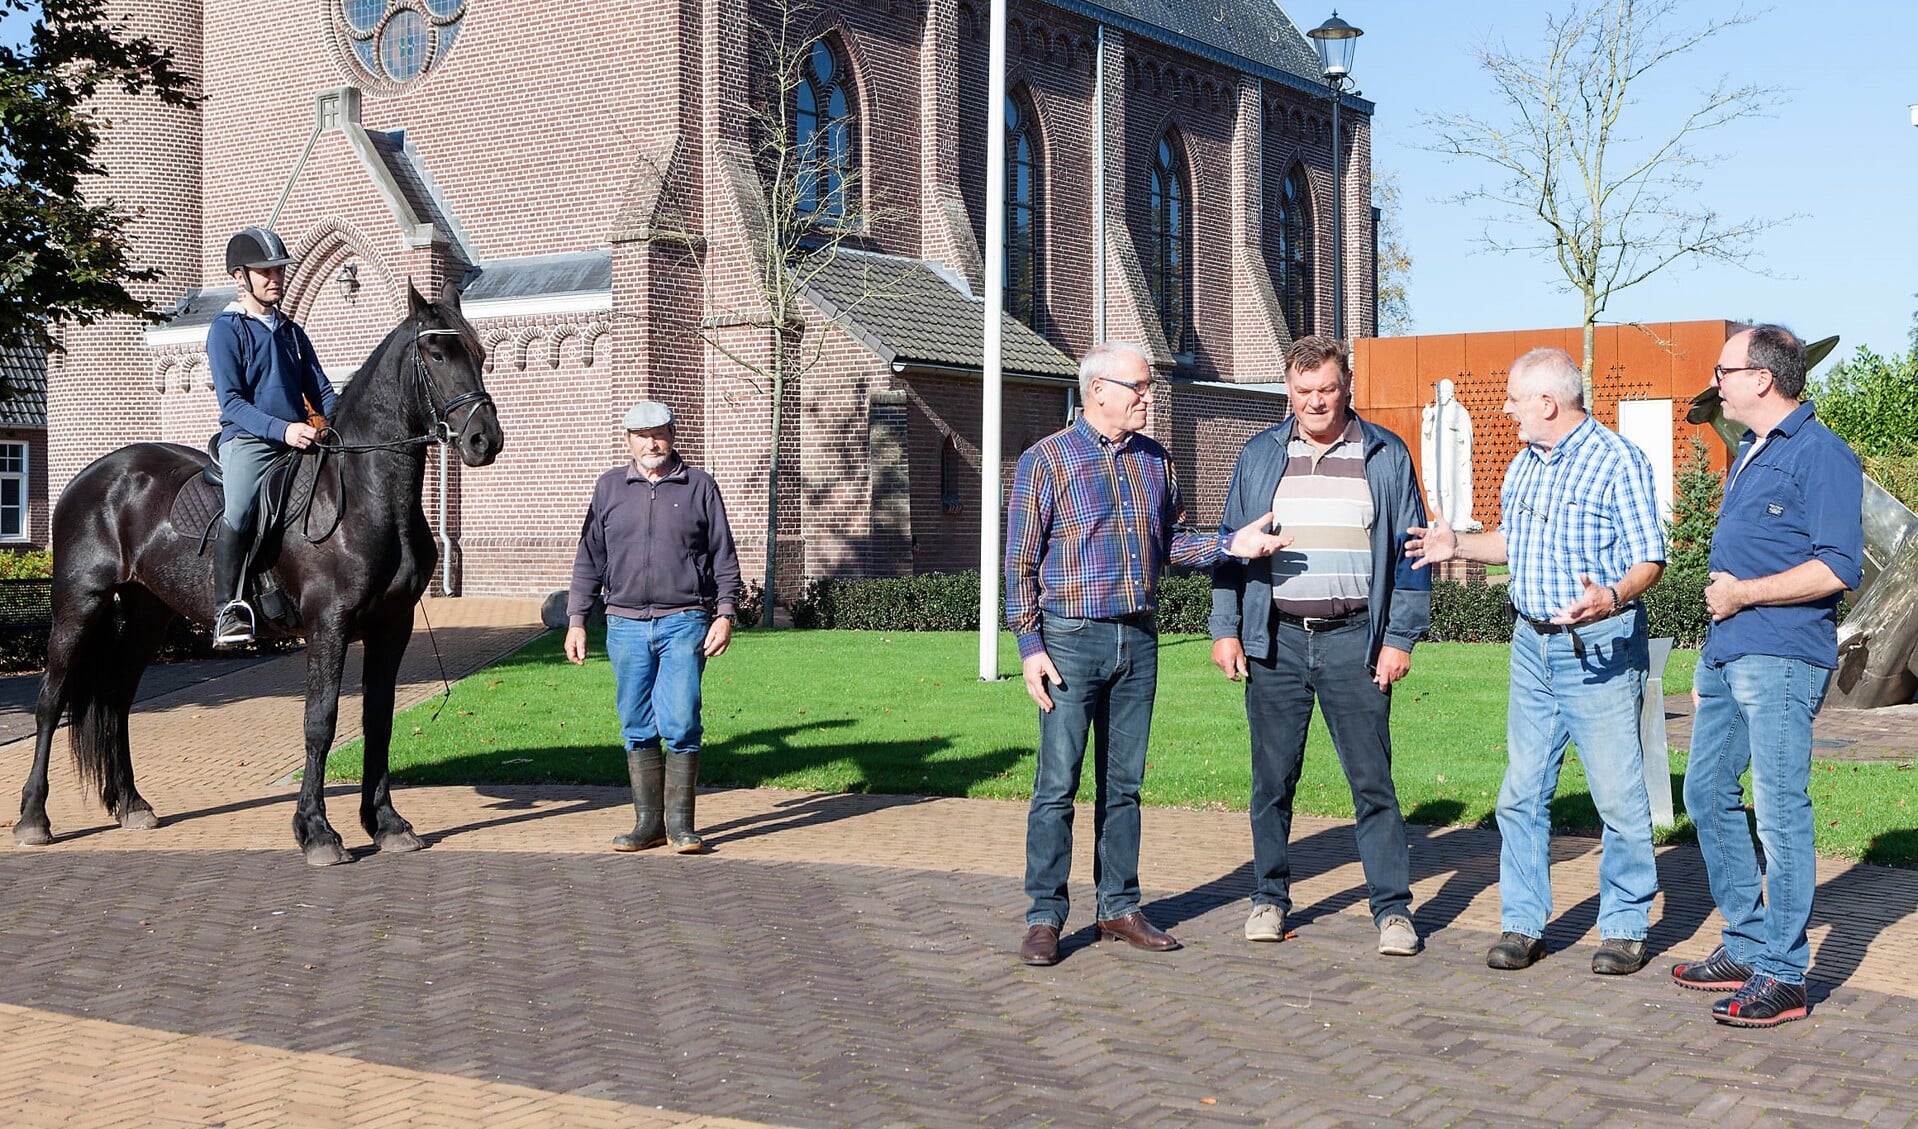 Op het paard Joost van Katwijk en (vlnr) Wim van den Berg, Frans van der Heijden, Wim Voesten, Ingo Oldenkamp en Jan Noy.